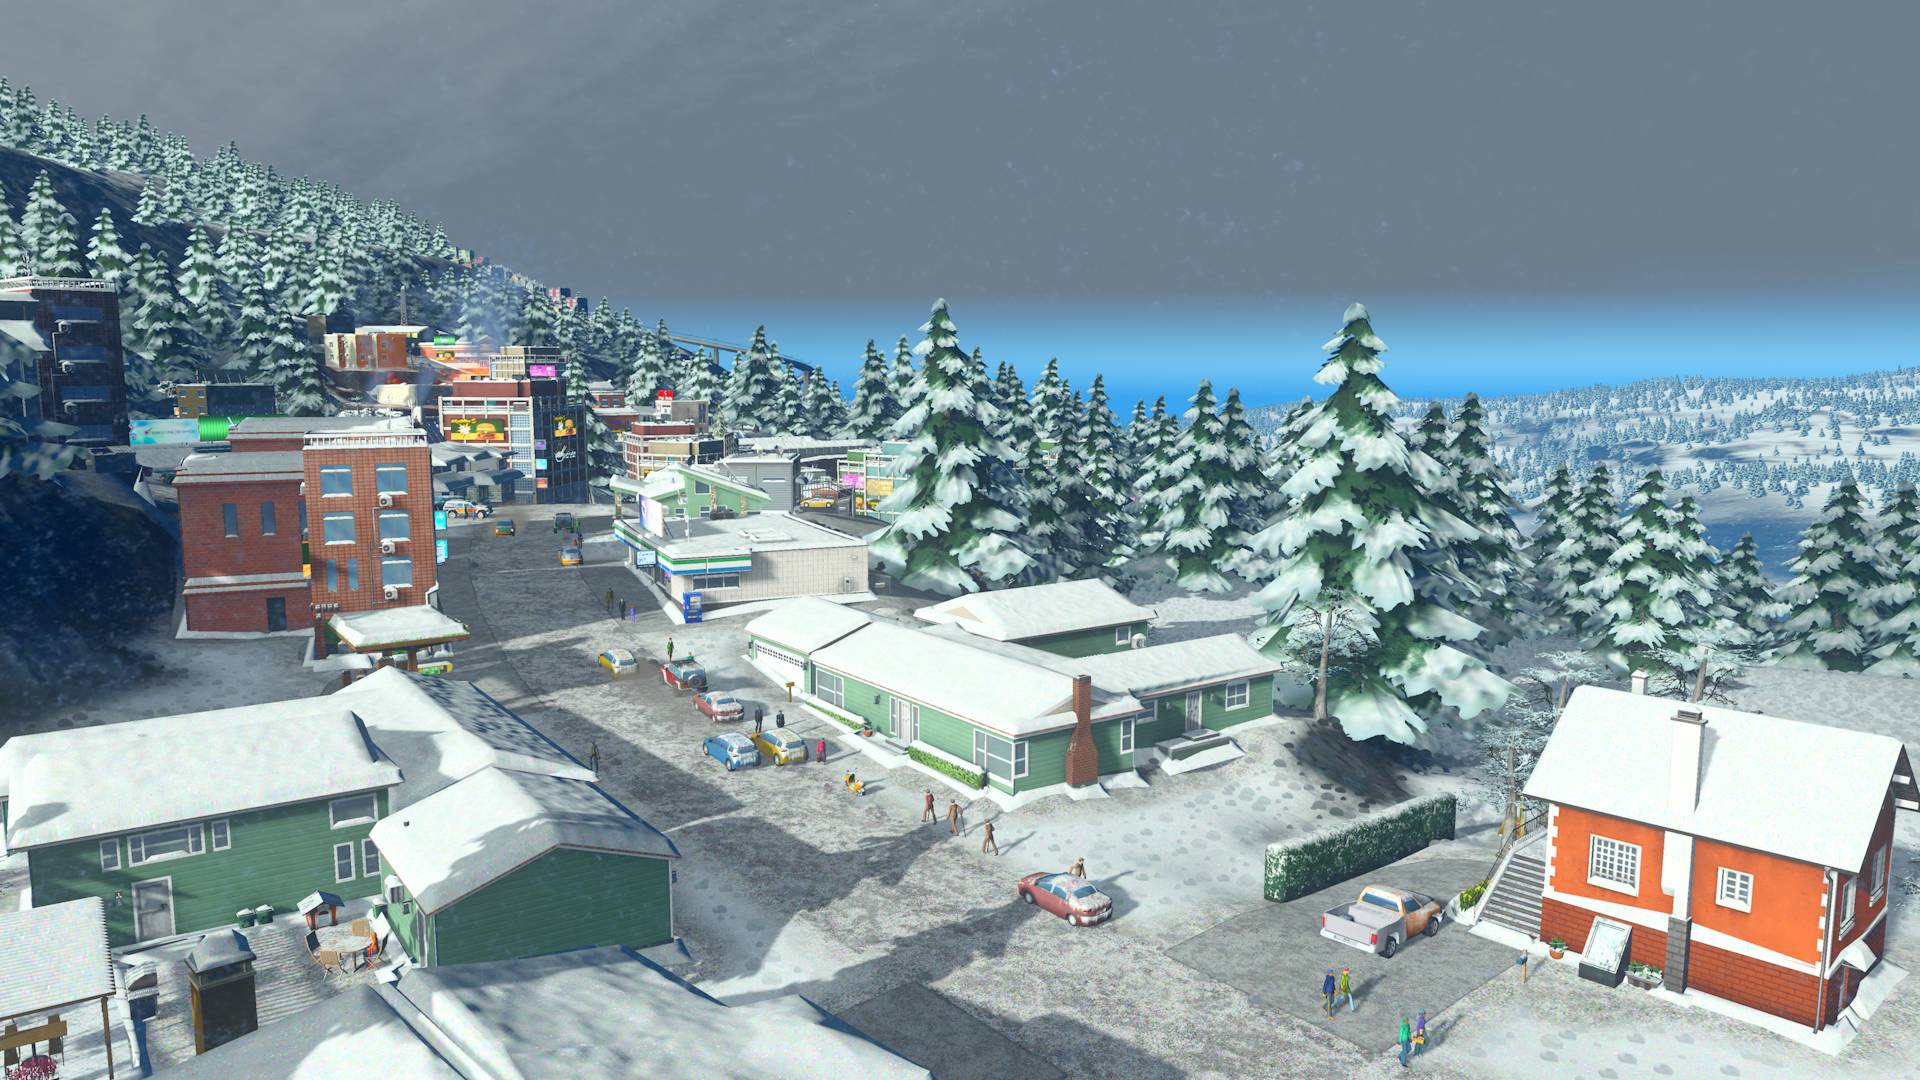 Bản mở rộng Snowfall cho Cities: Skylines tới với Xbox One và Windows 10 Store – Tin Game